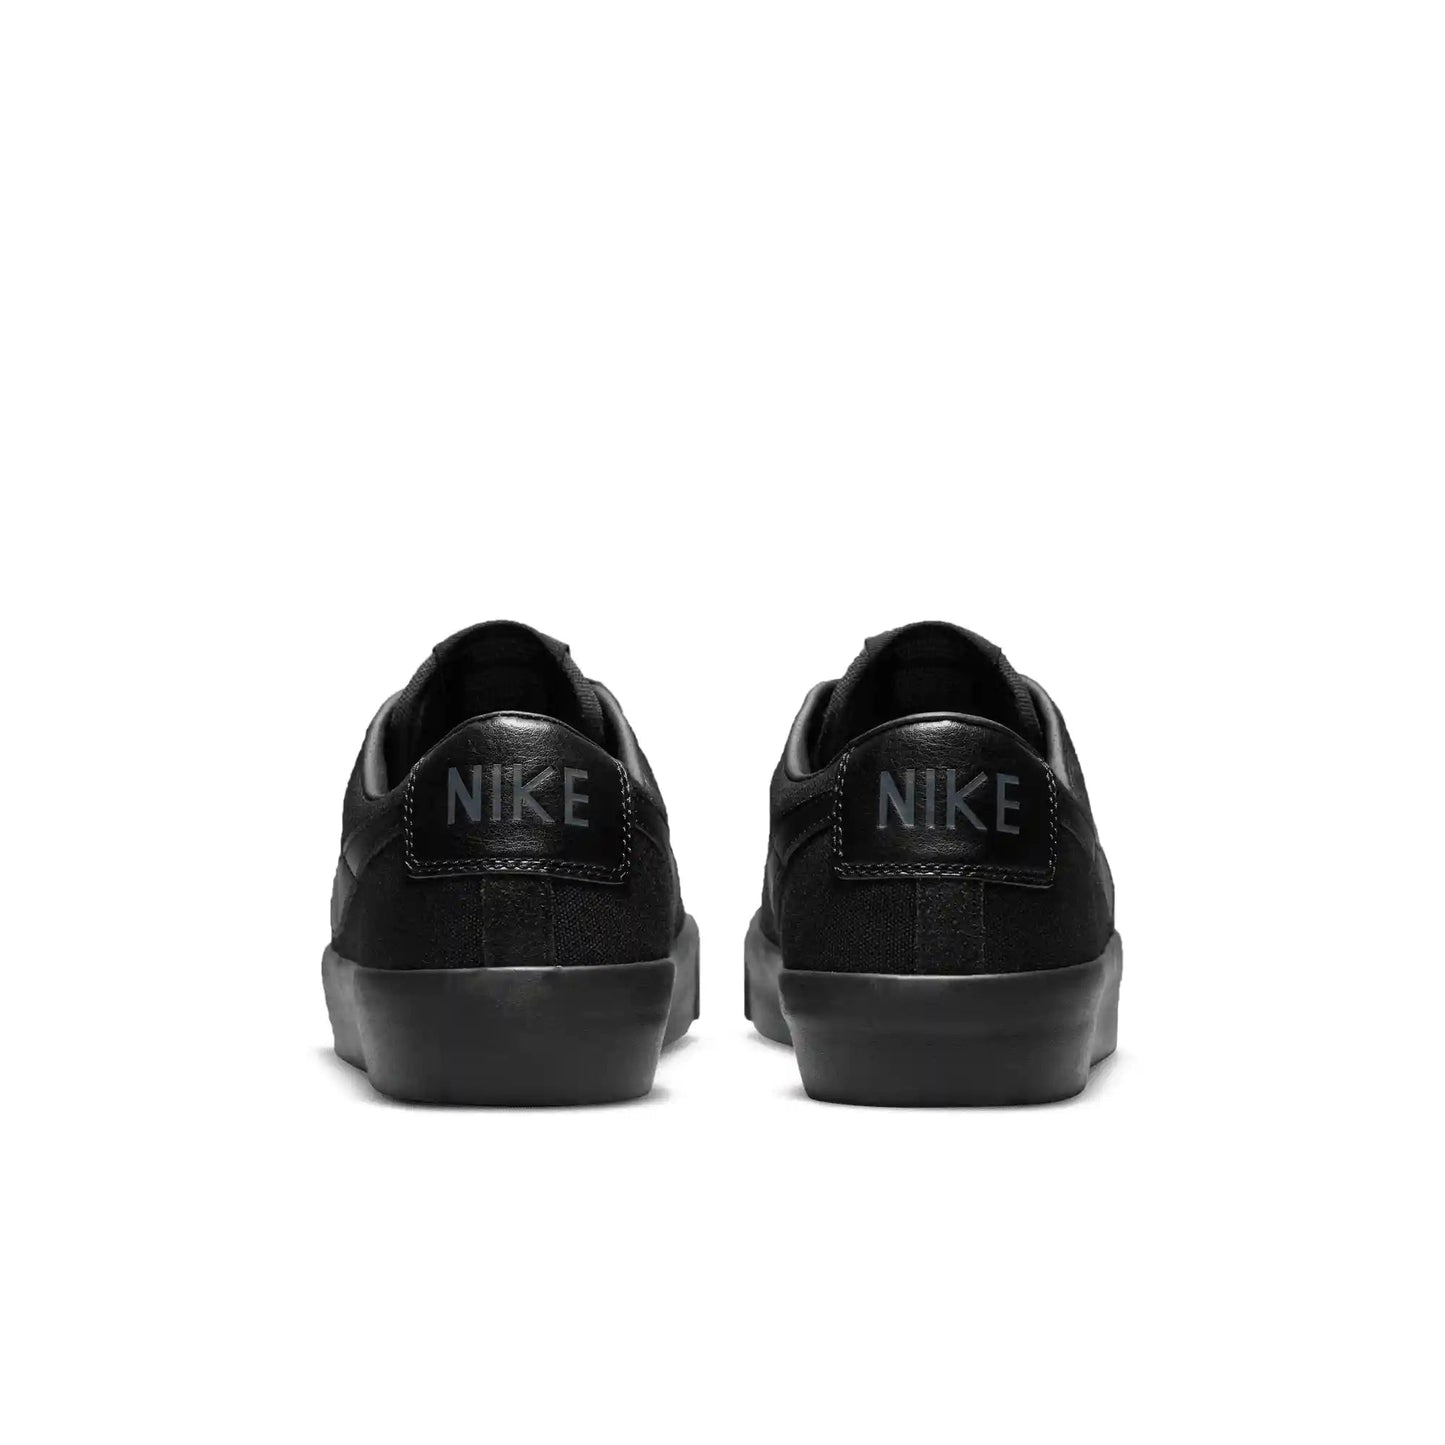 Nike SB Zoom Blazer Low Pro GT, black/black-black-anthracite - Tiki Room Skateboards - 8